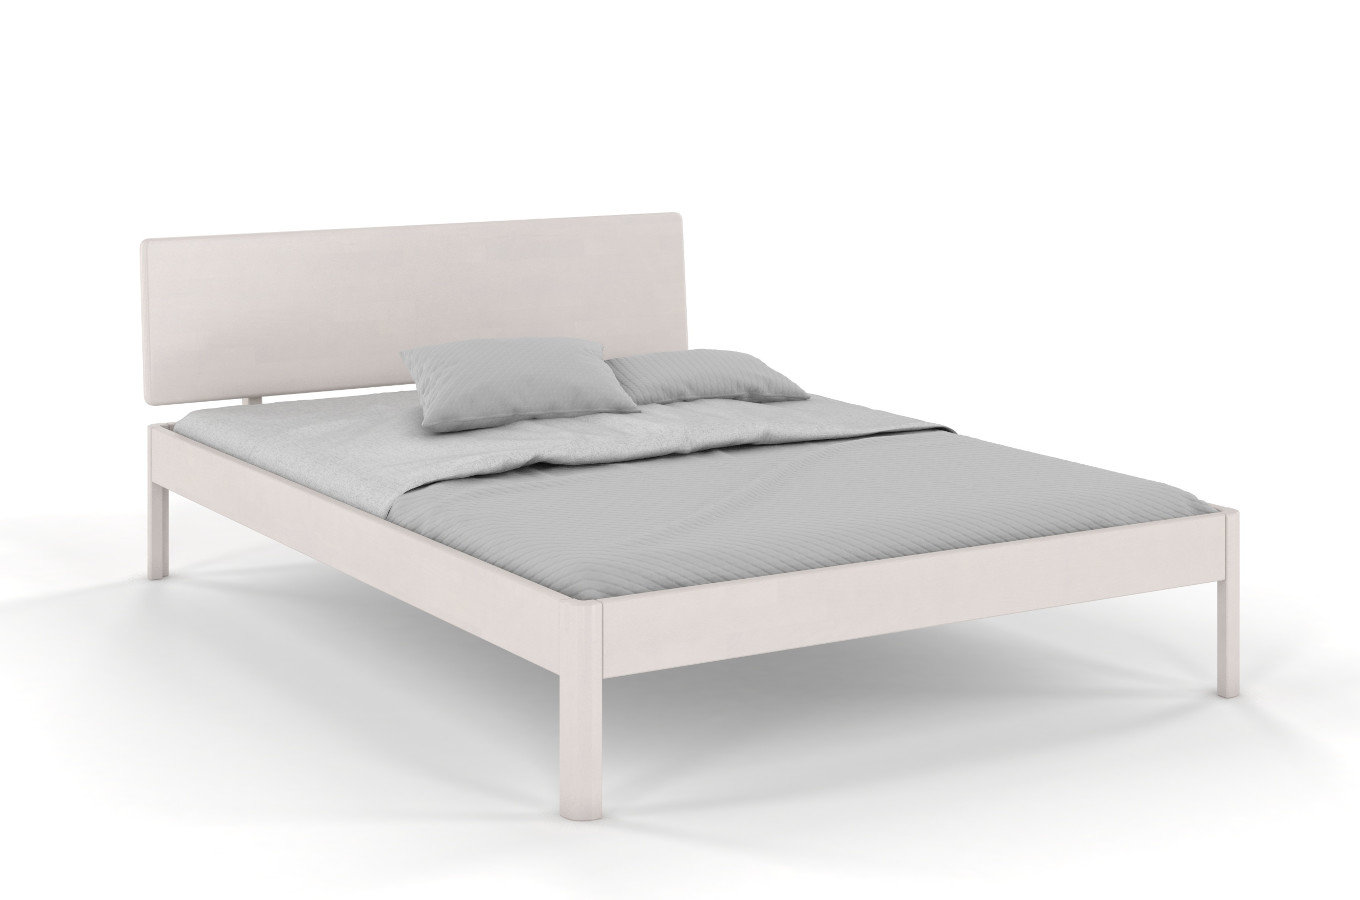  Łóżko drewniane bukowe Visby AMMER / 180x200 cm, kolor biały